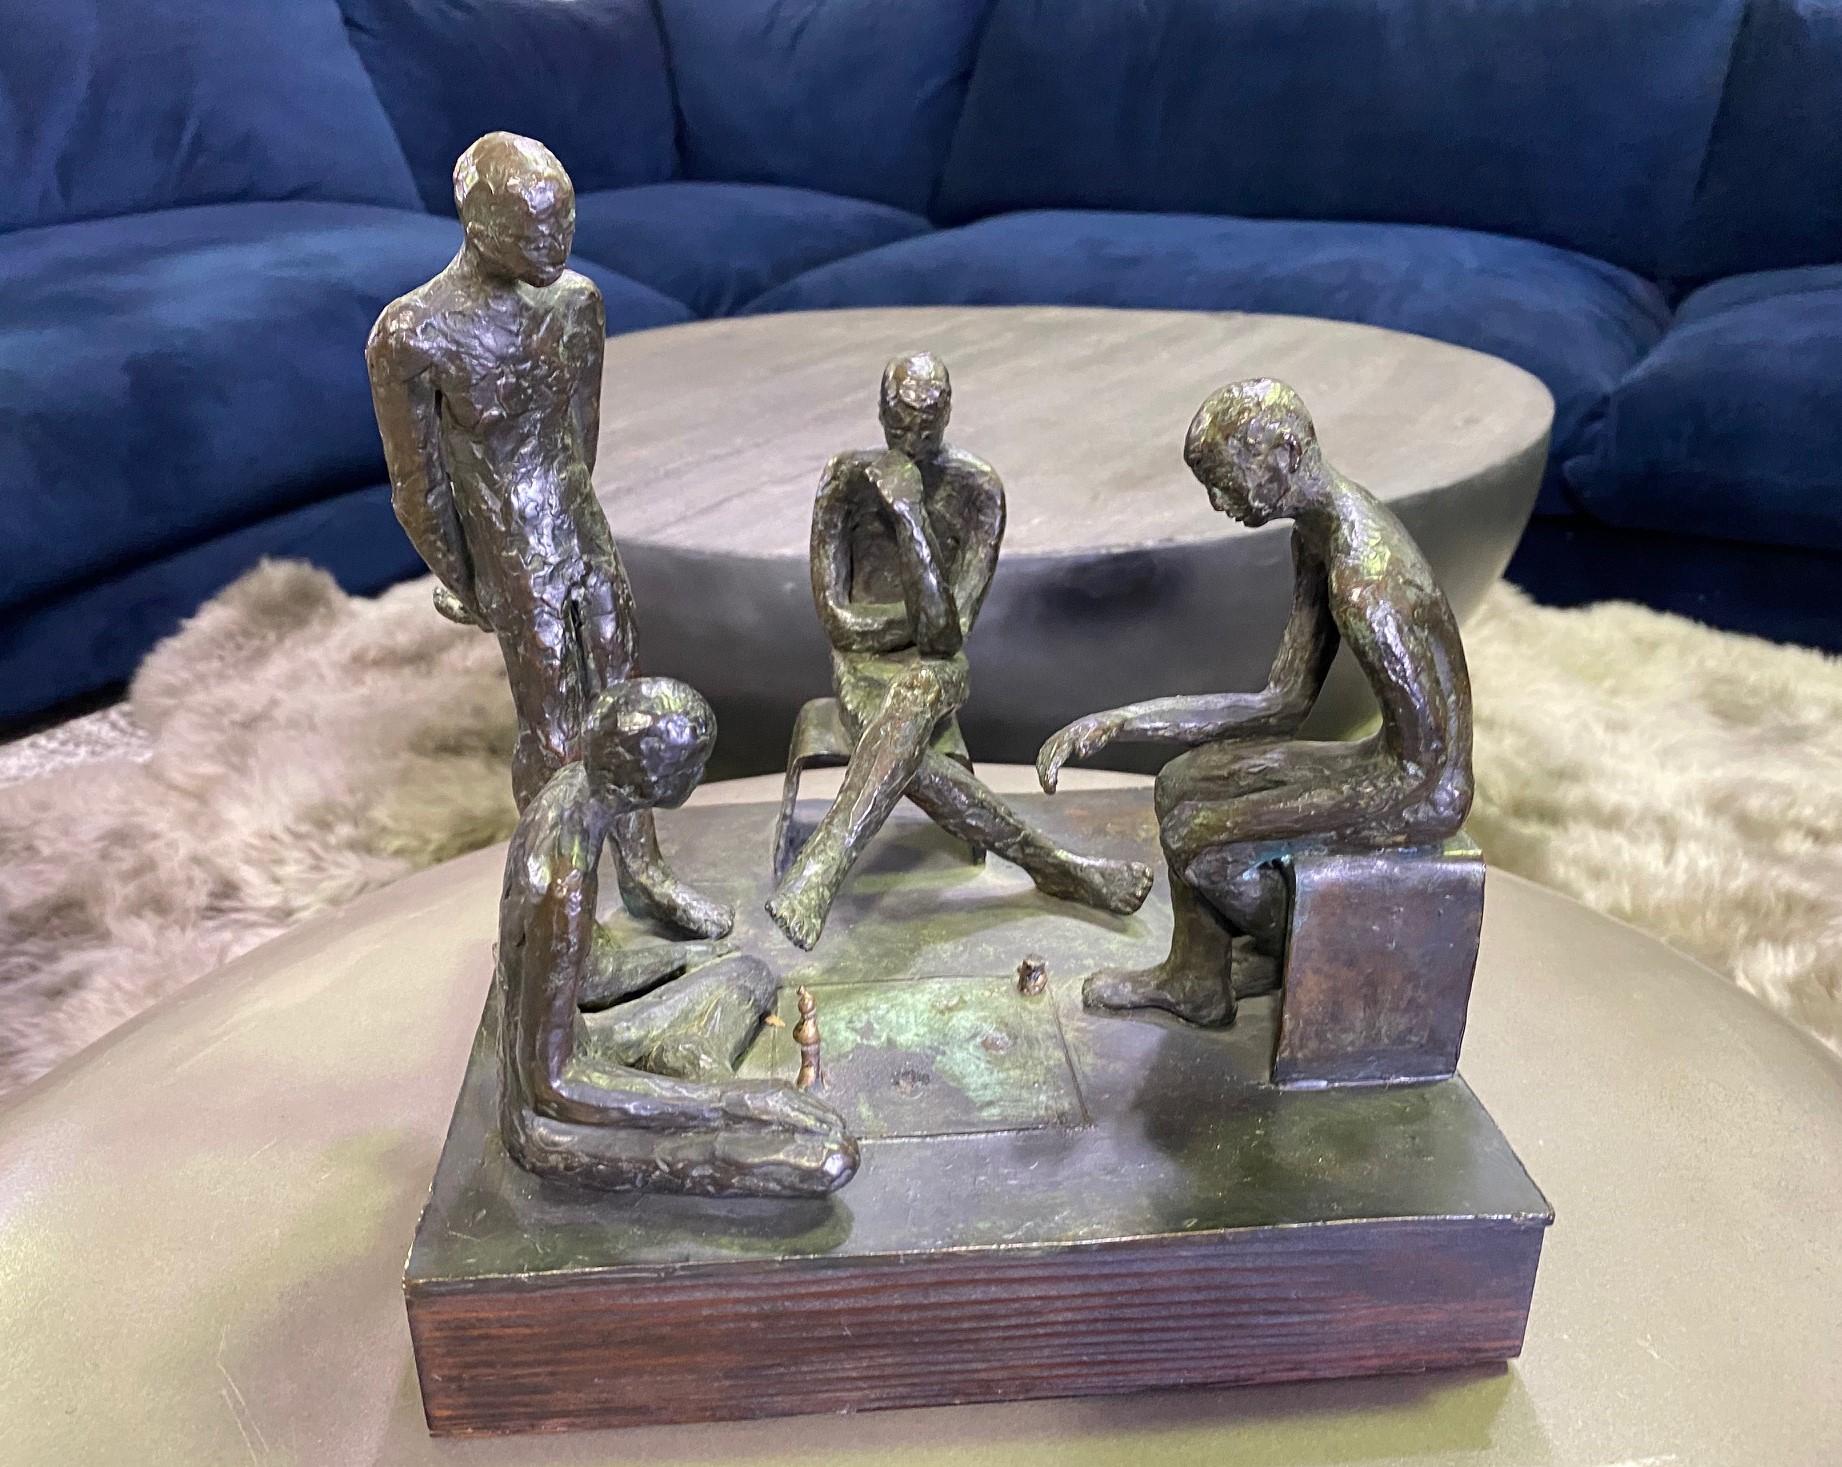 Dies ist ein wunderschönes Werk mit einem wunderbar komponierten Design. Das Werk zeigt vier Männer in stiller Kontemplation, die eng beieinander stehen und sitzen und in Gedanken versunken sind. 

Vom Künstler signiert und datiert ('72).